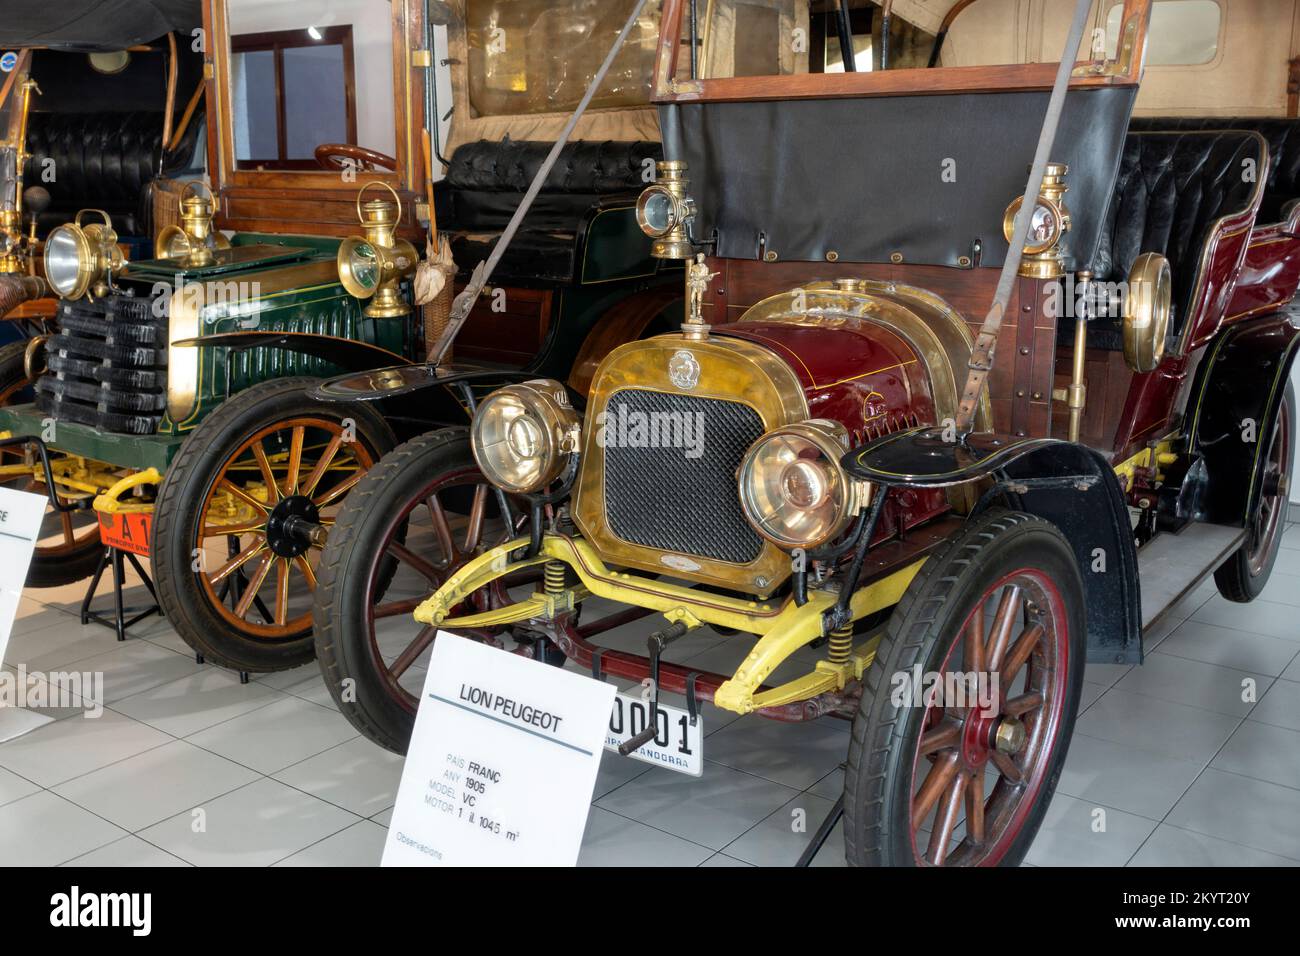 Lion Peugeot model VC (1905).France.Automobile Museum.Encamp.Andorra Stock Photo